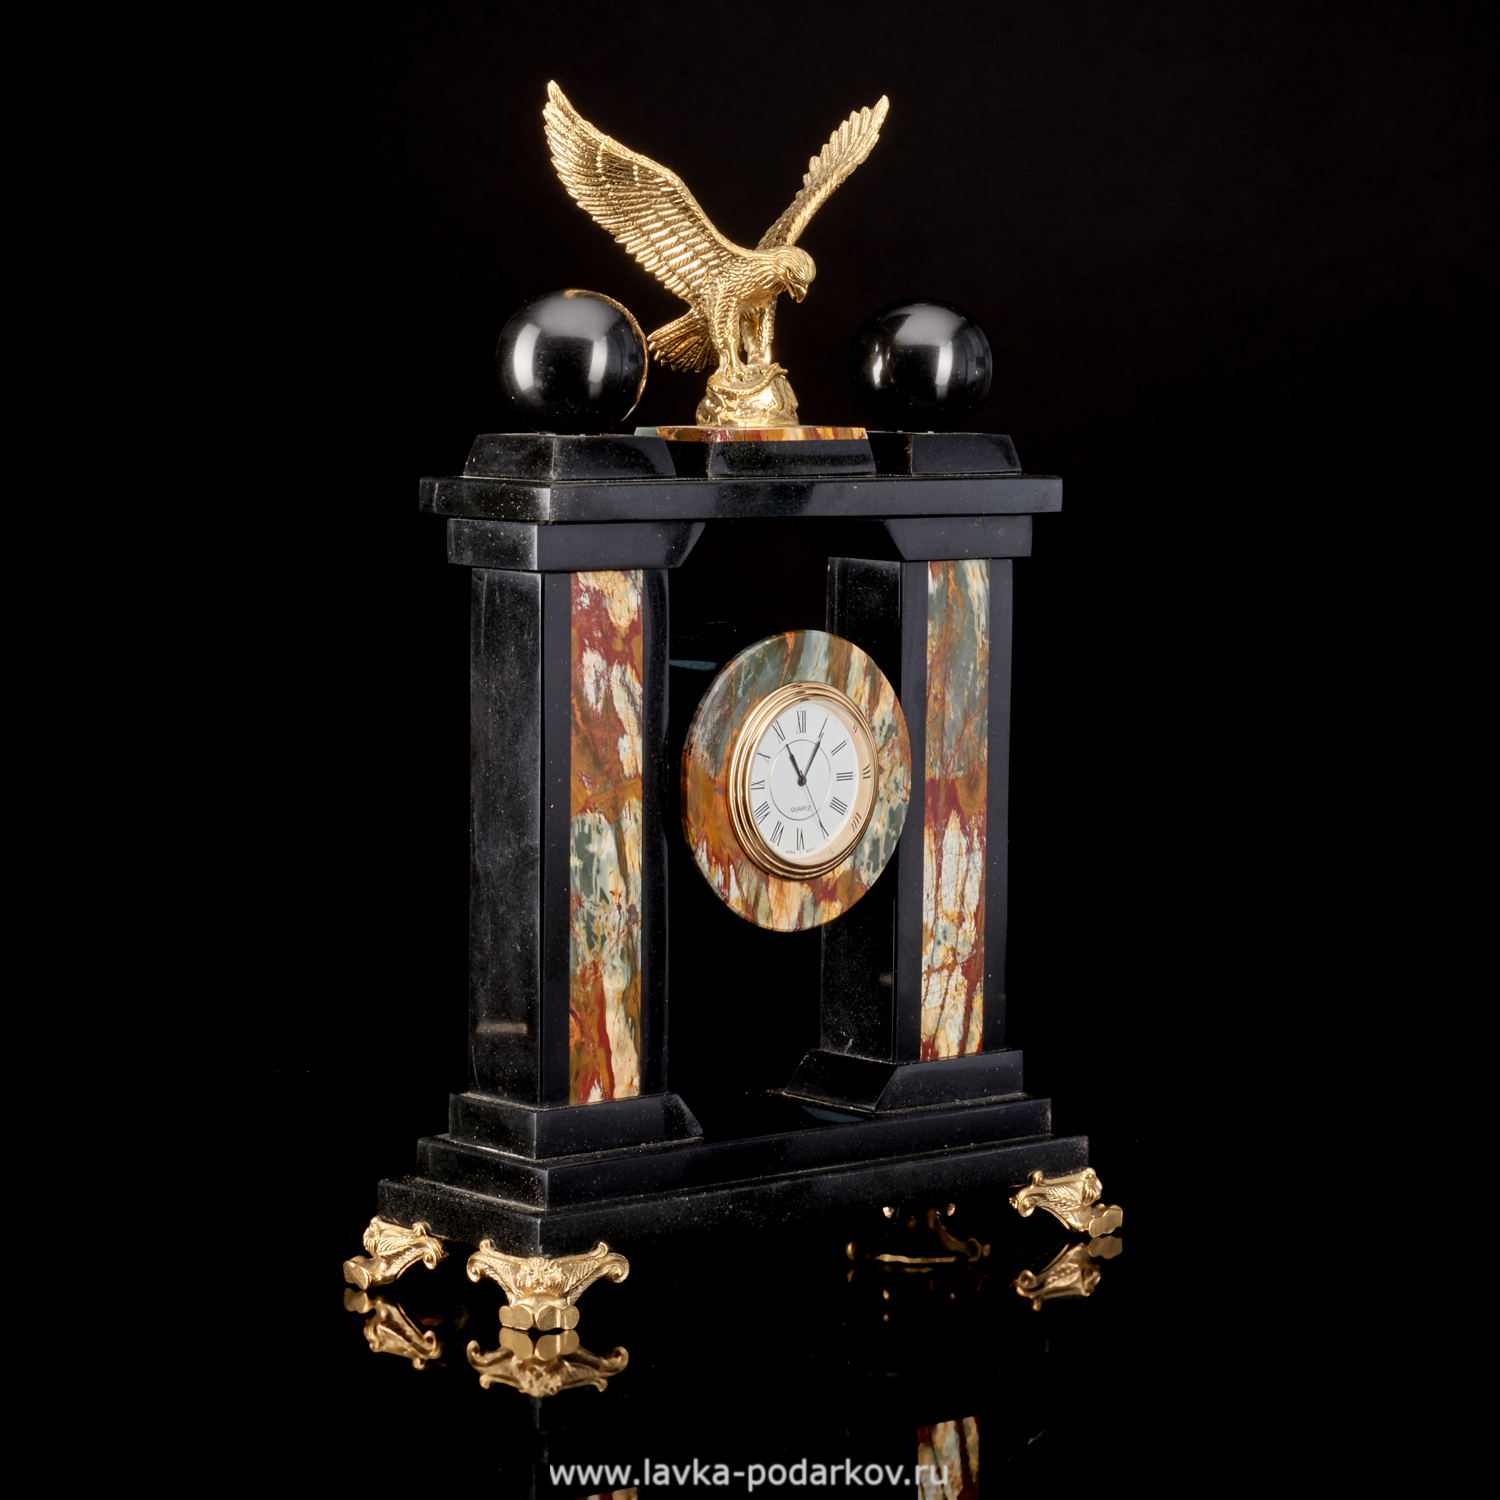 Магазины часов златоуст. Часы с орлом. Часы из натурального камня. Часы с орлом из камня. Настольные часы Златоустовского часового завода.